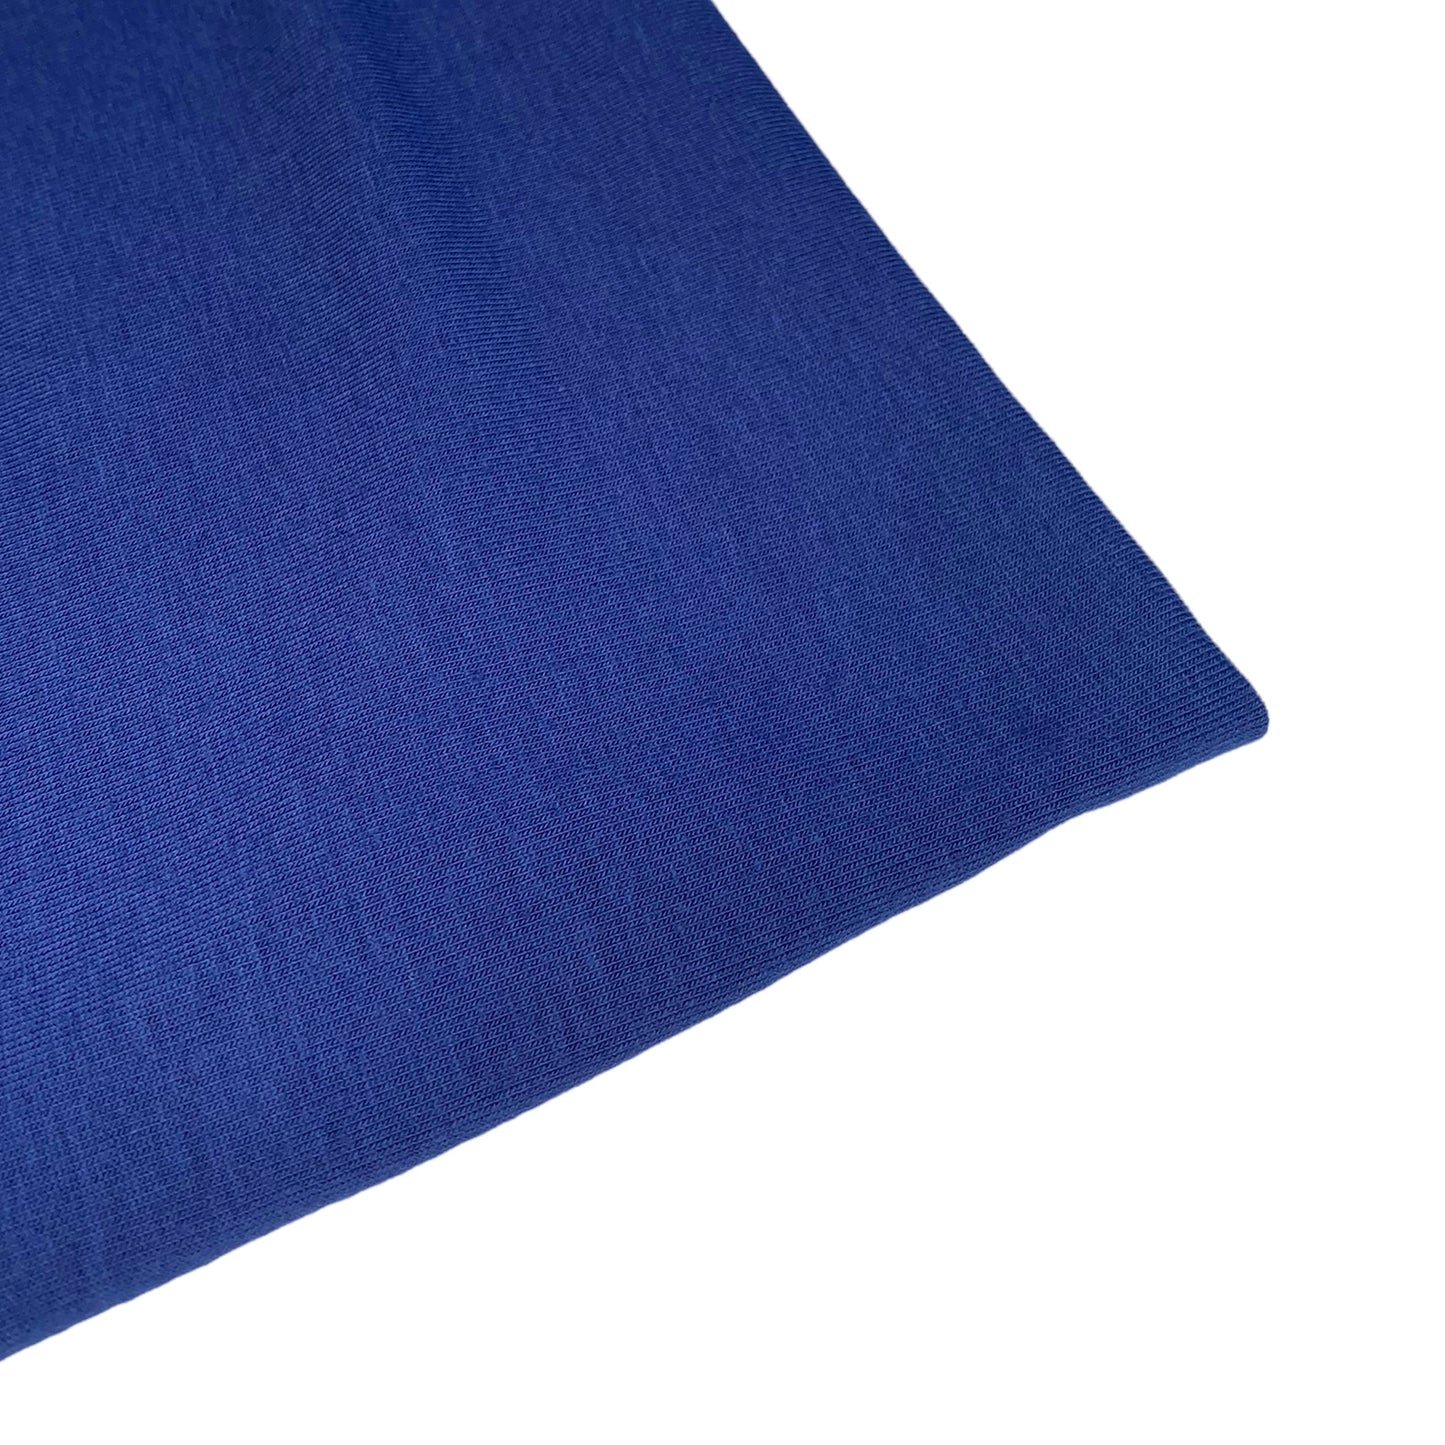 Cotton/Polyester Knit - Navy Blue